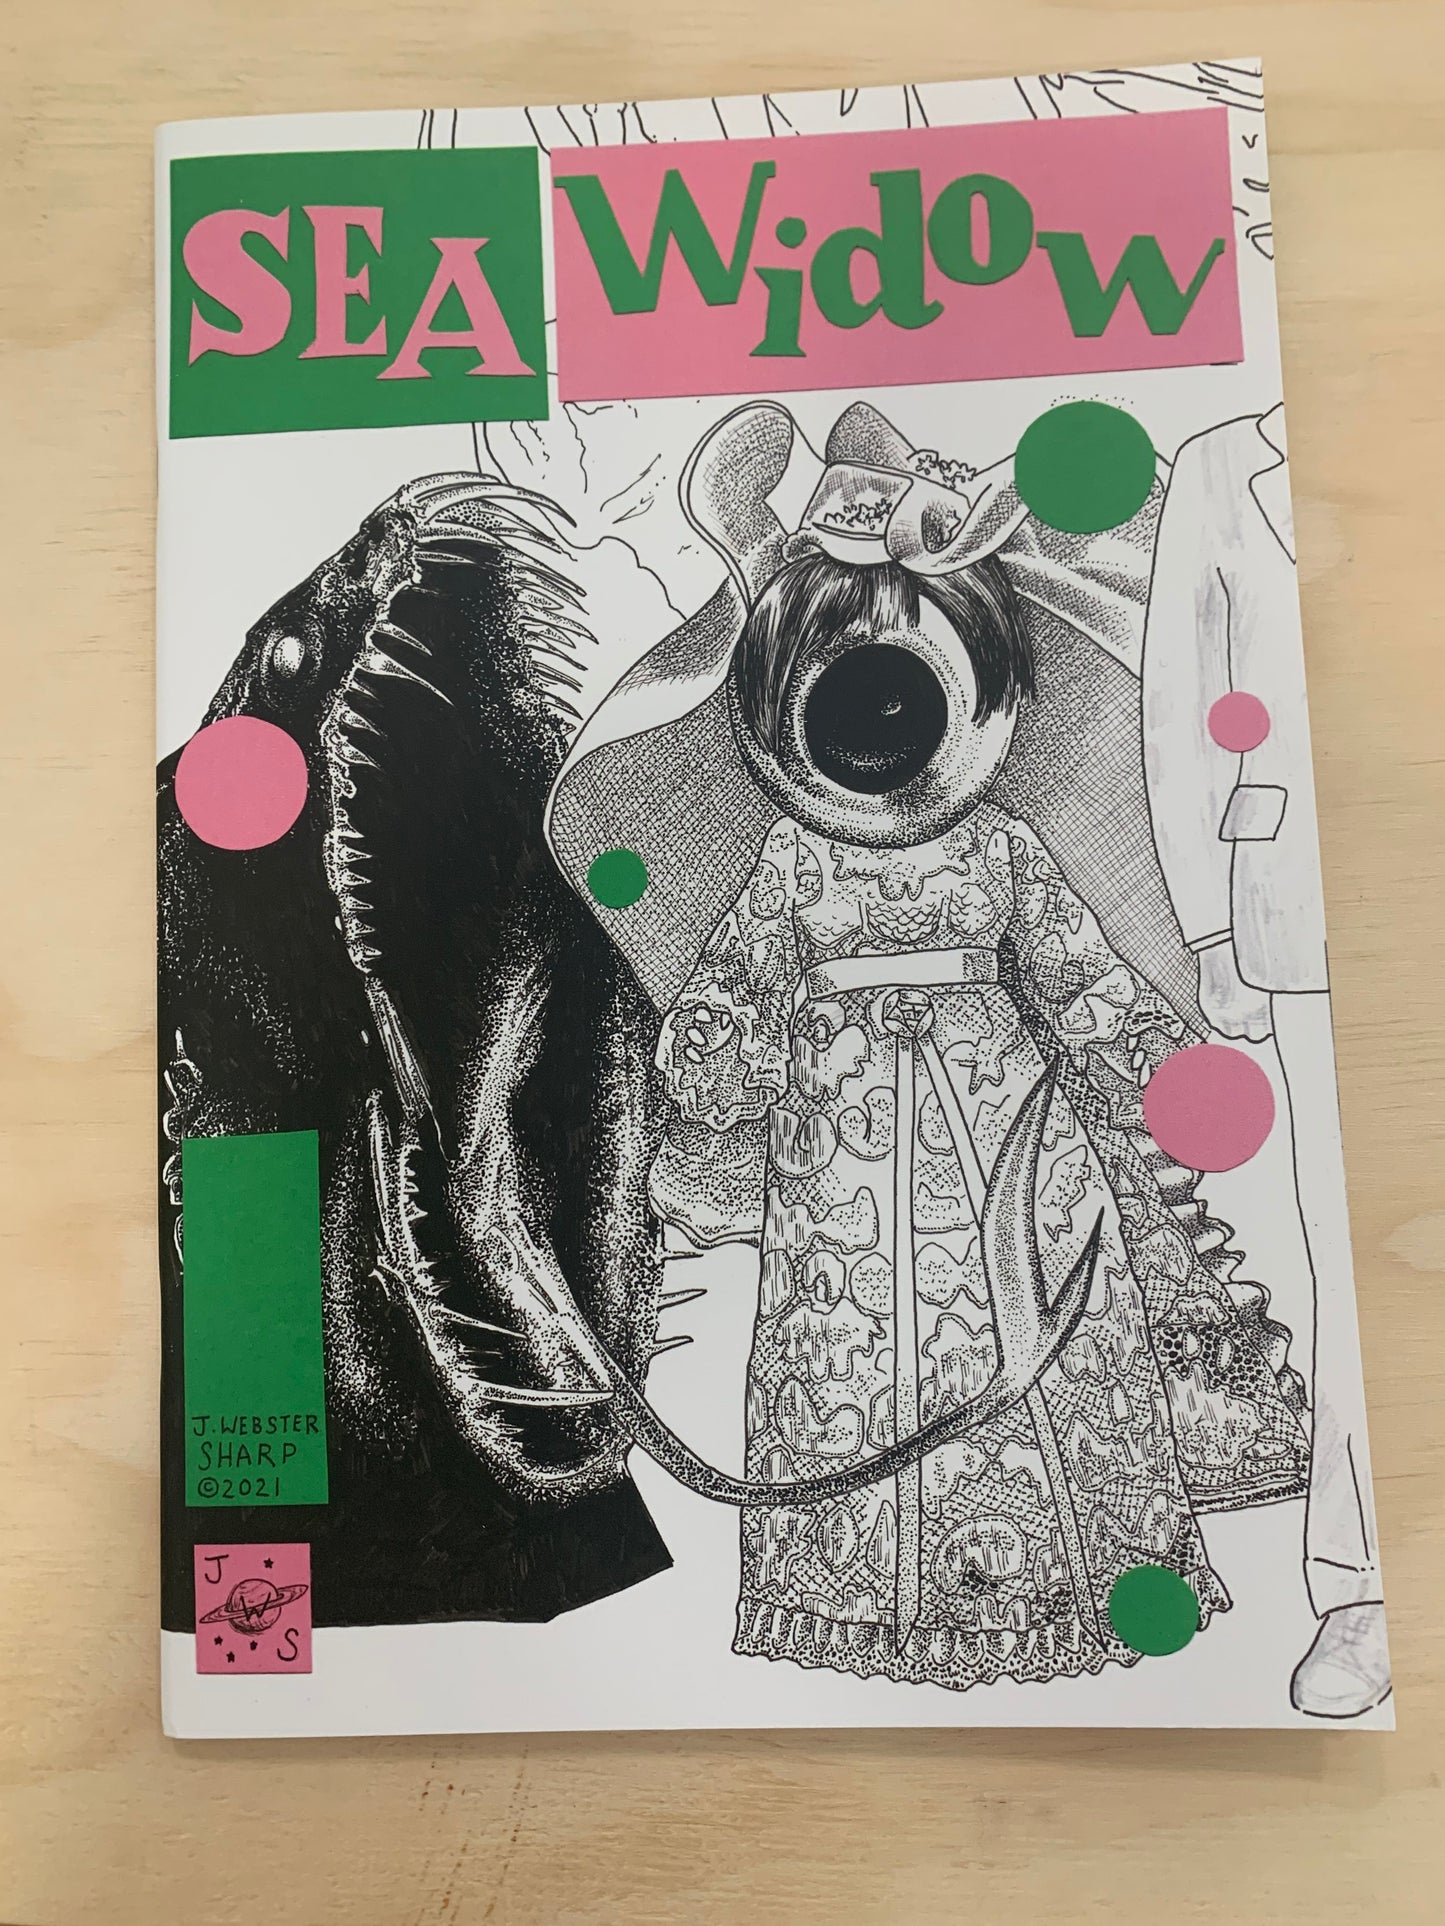 Sea Widow